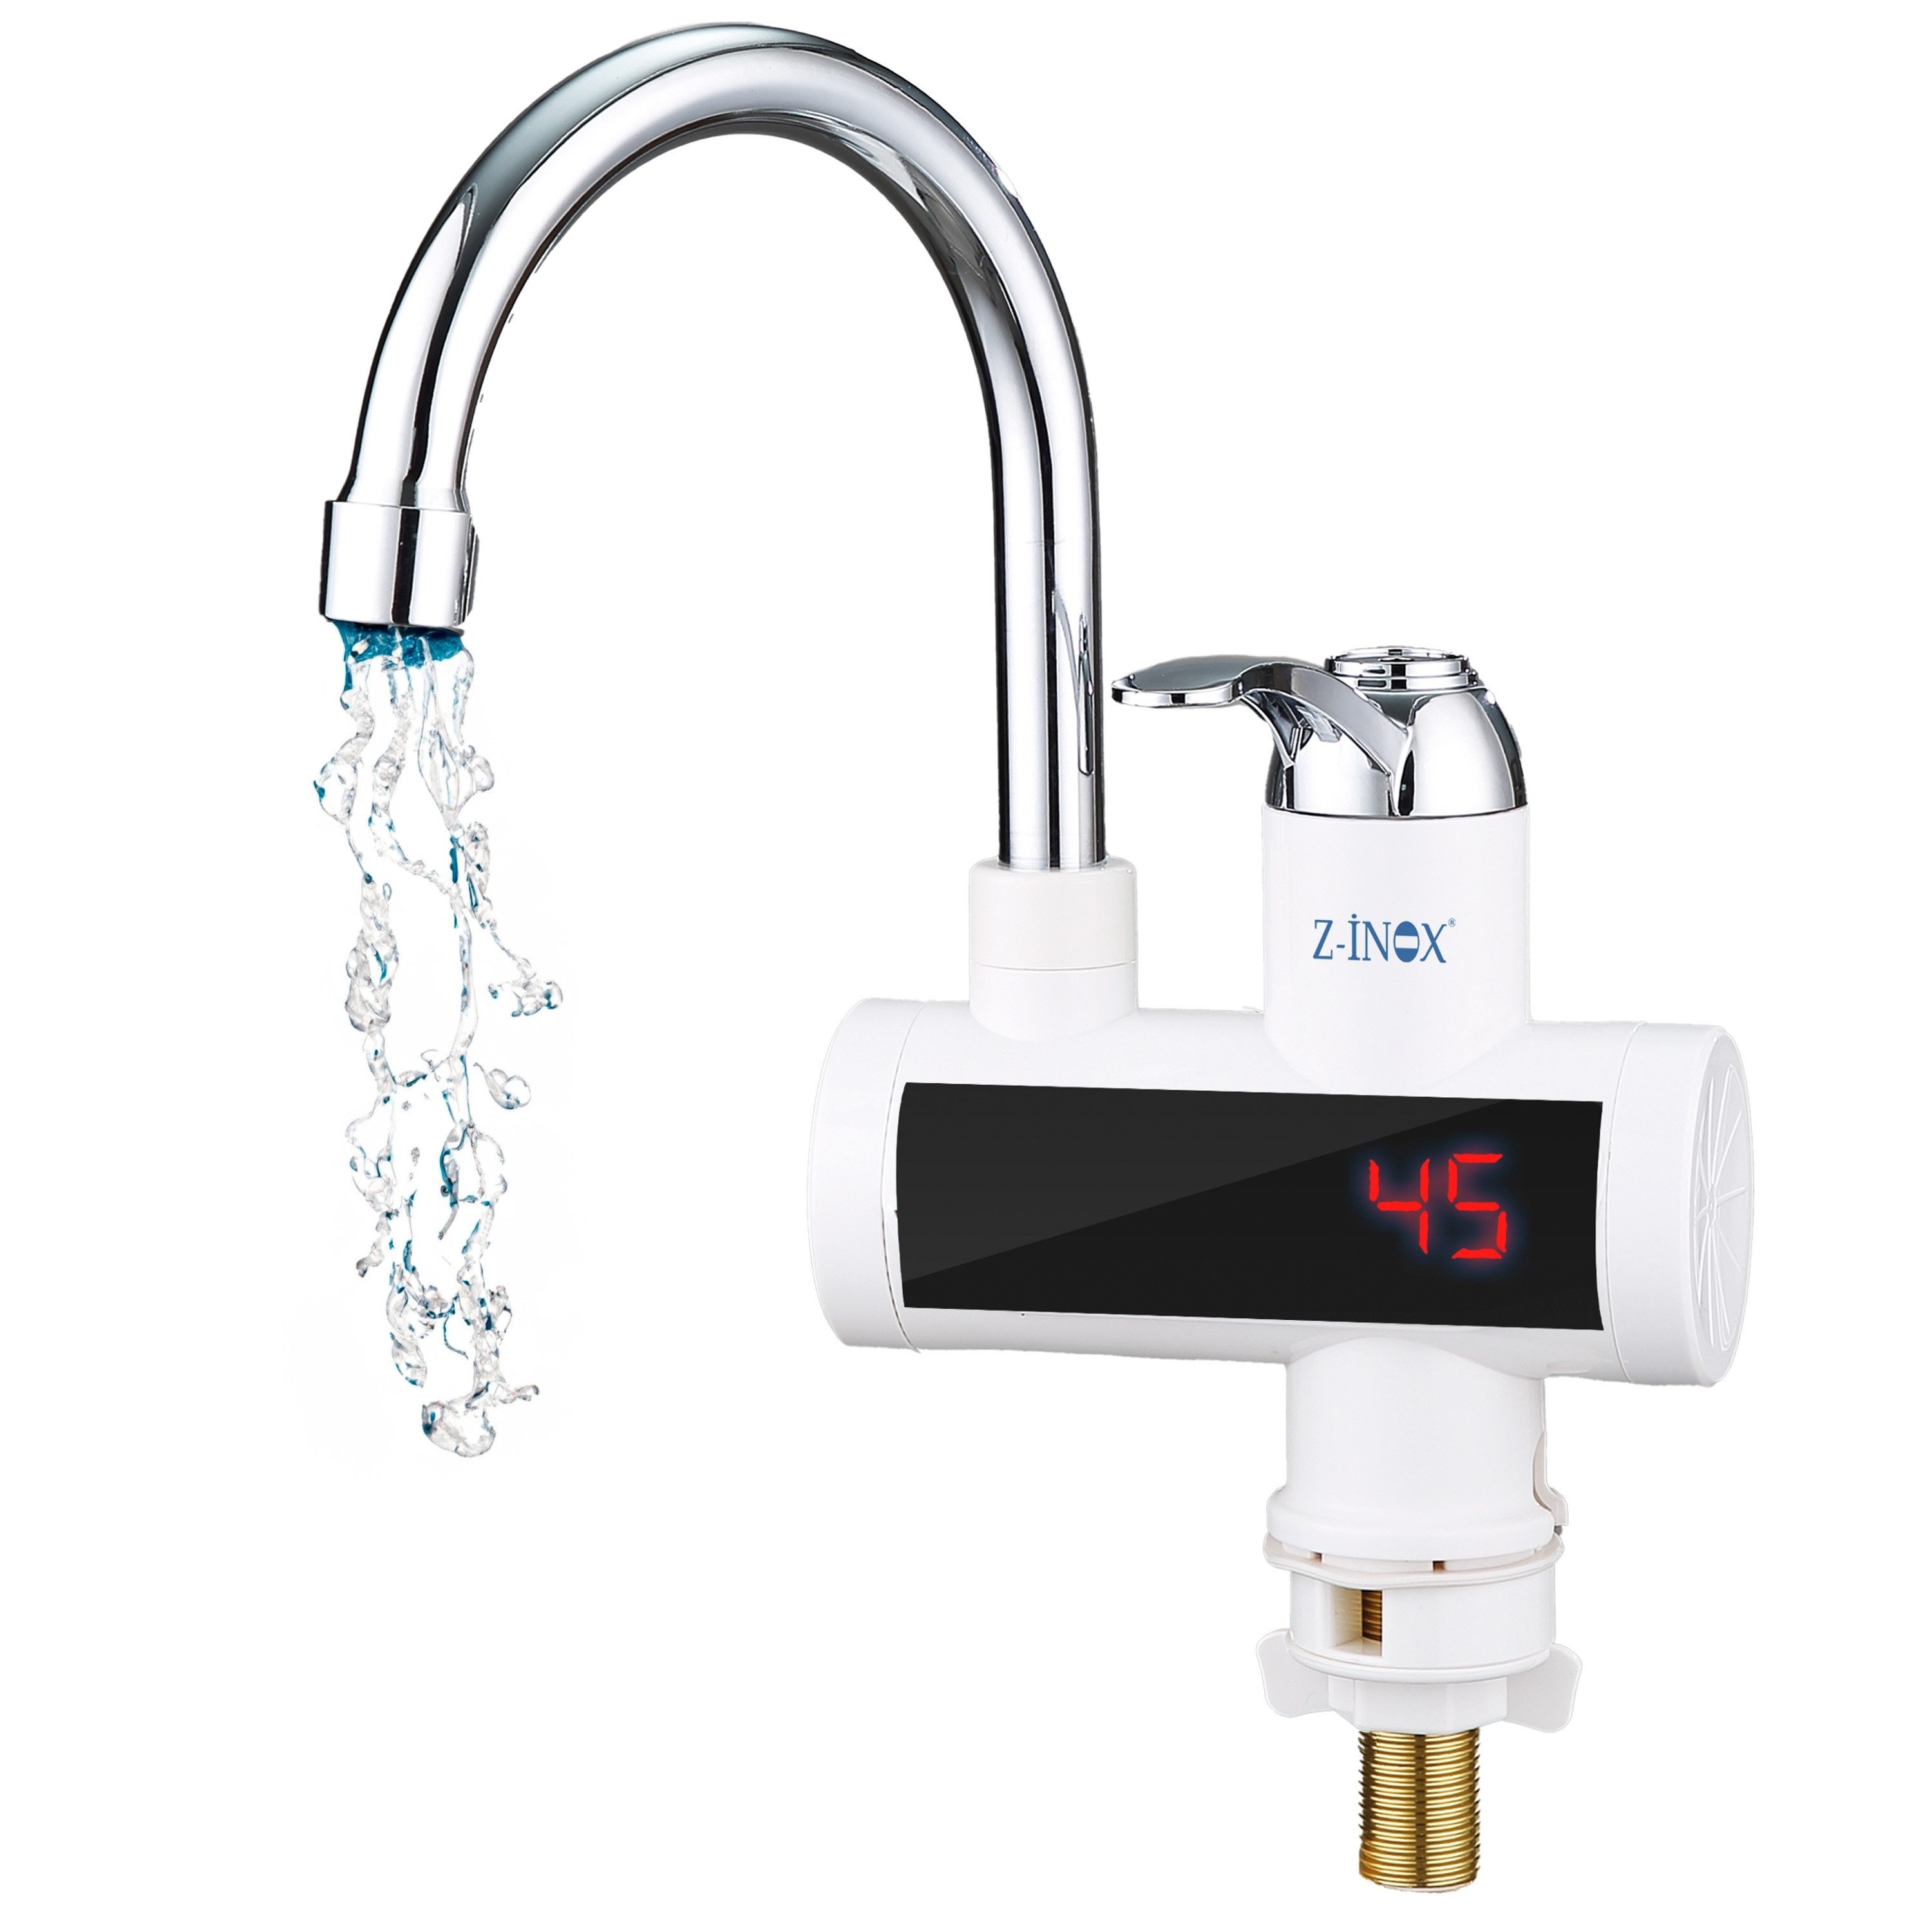 Zilan Elektrischer Wasserhahn ZLN-7866, Niederdruck-Anschluss, 3000 W,Display mit Temperaturanzeige,Überhitzungsschutz